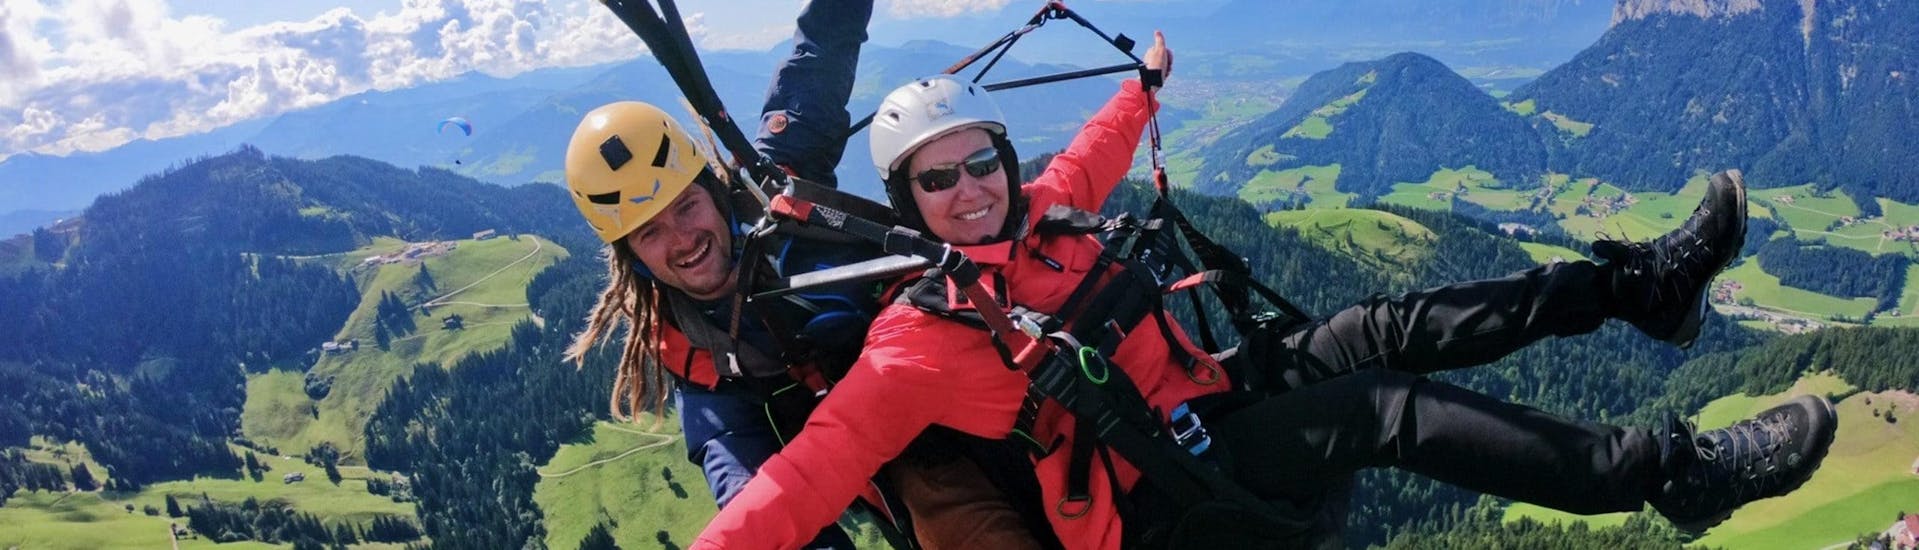 Thermisch tandem paragliding in Söll - Kitzbühel Alps.